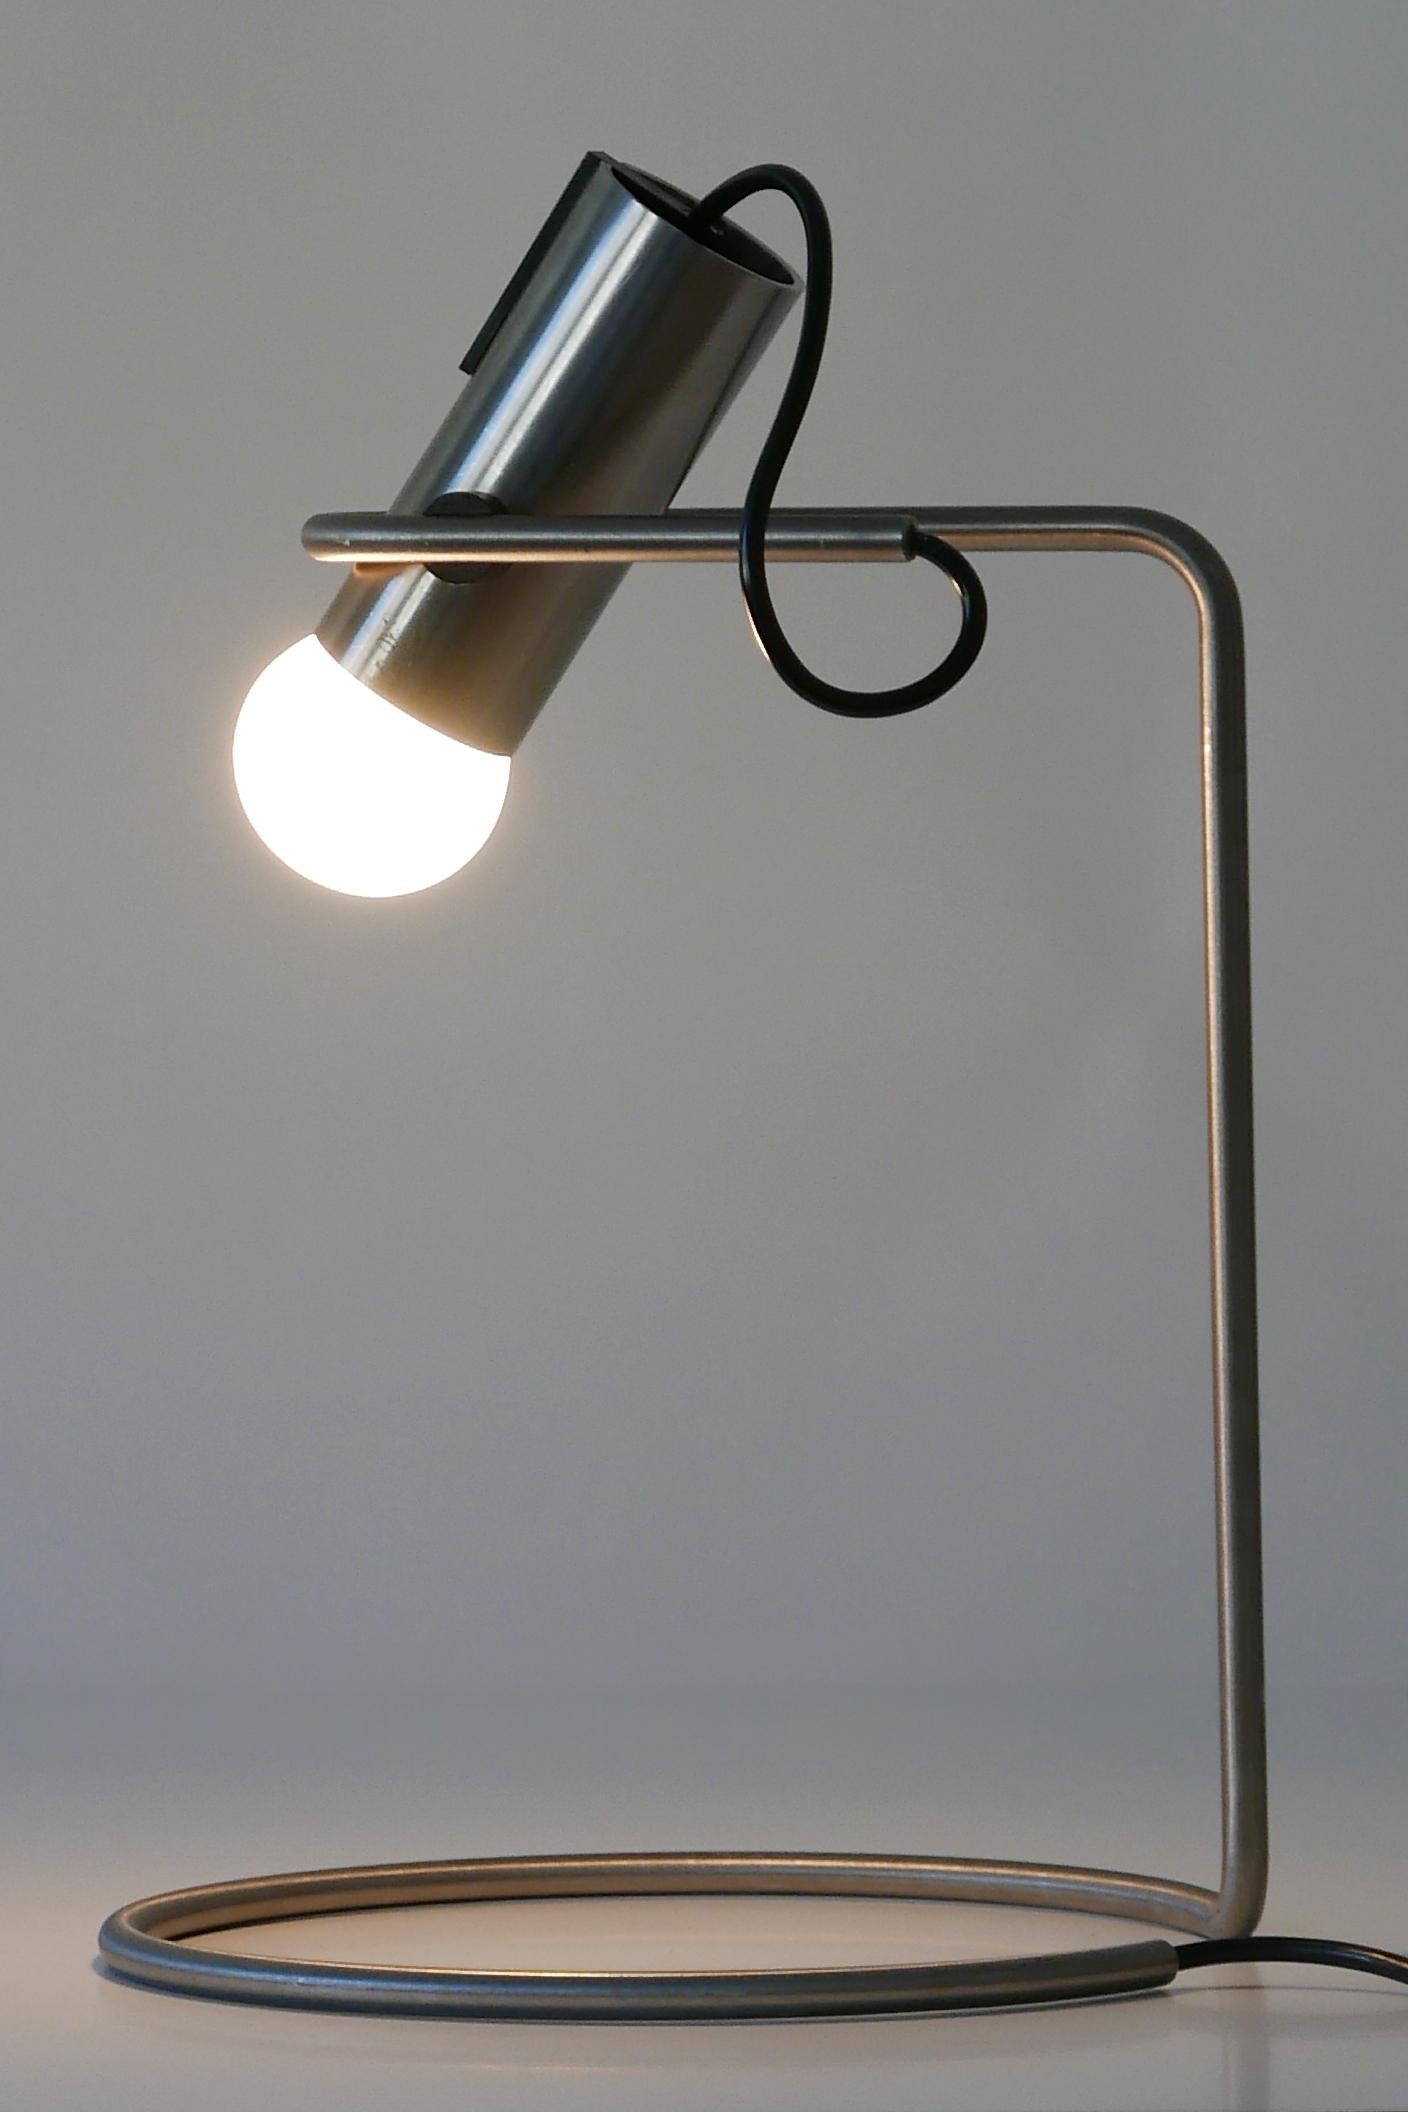 Äußerst seltene, minimalistische Mid-Century Modern Tischlampe oder Schreibtischlampe. Hergestellt wahrscheinlich in Italien in den 1960er/1970er Jahren.

Ausgeführt in Stahlrohr und -blech, benötigt die Lampe 1 x E27 / E26 Edison-Schraubfassung